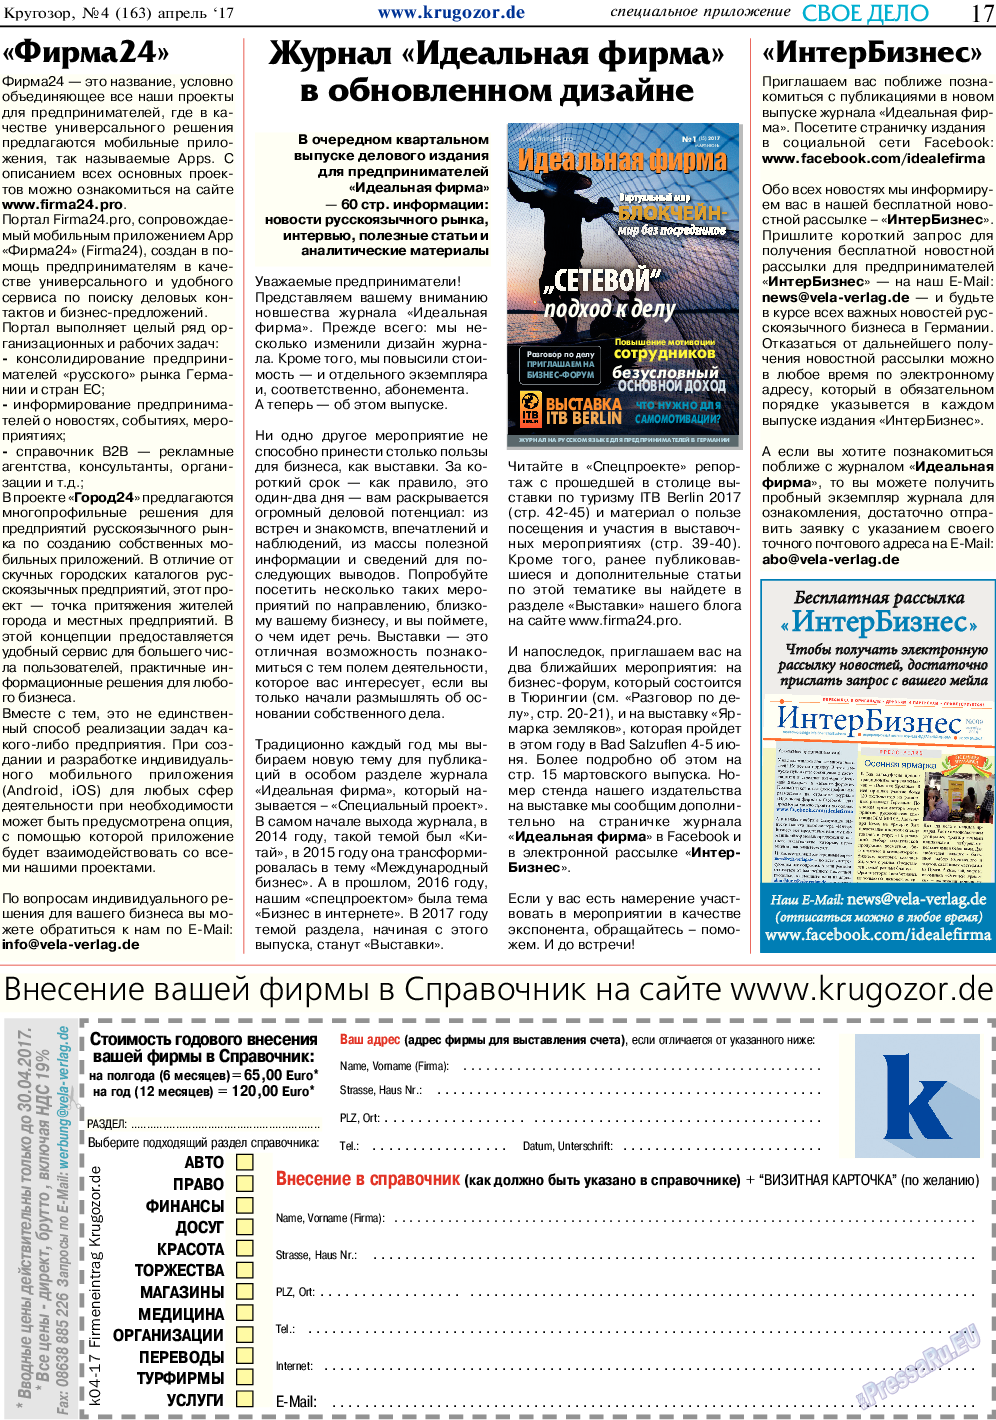 Кругозор, газета. 2017 №4 стр.17